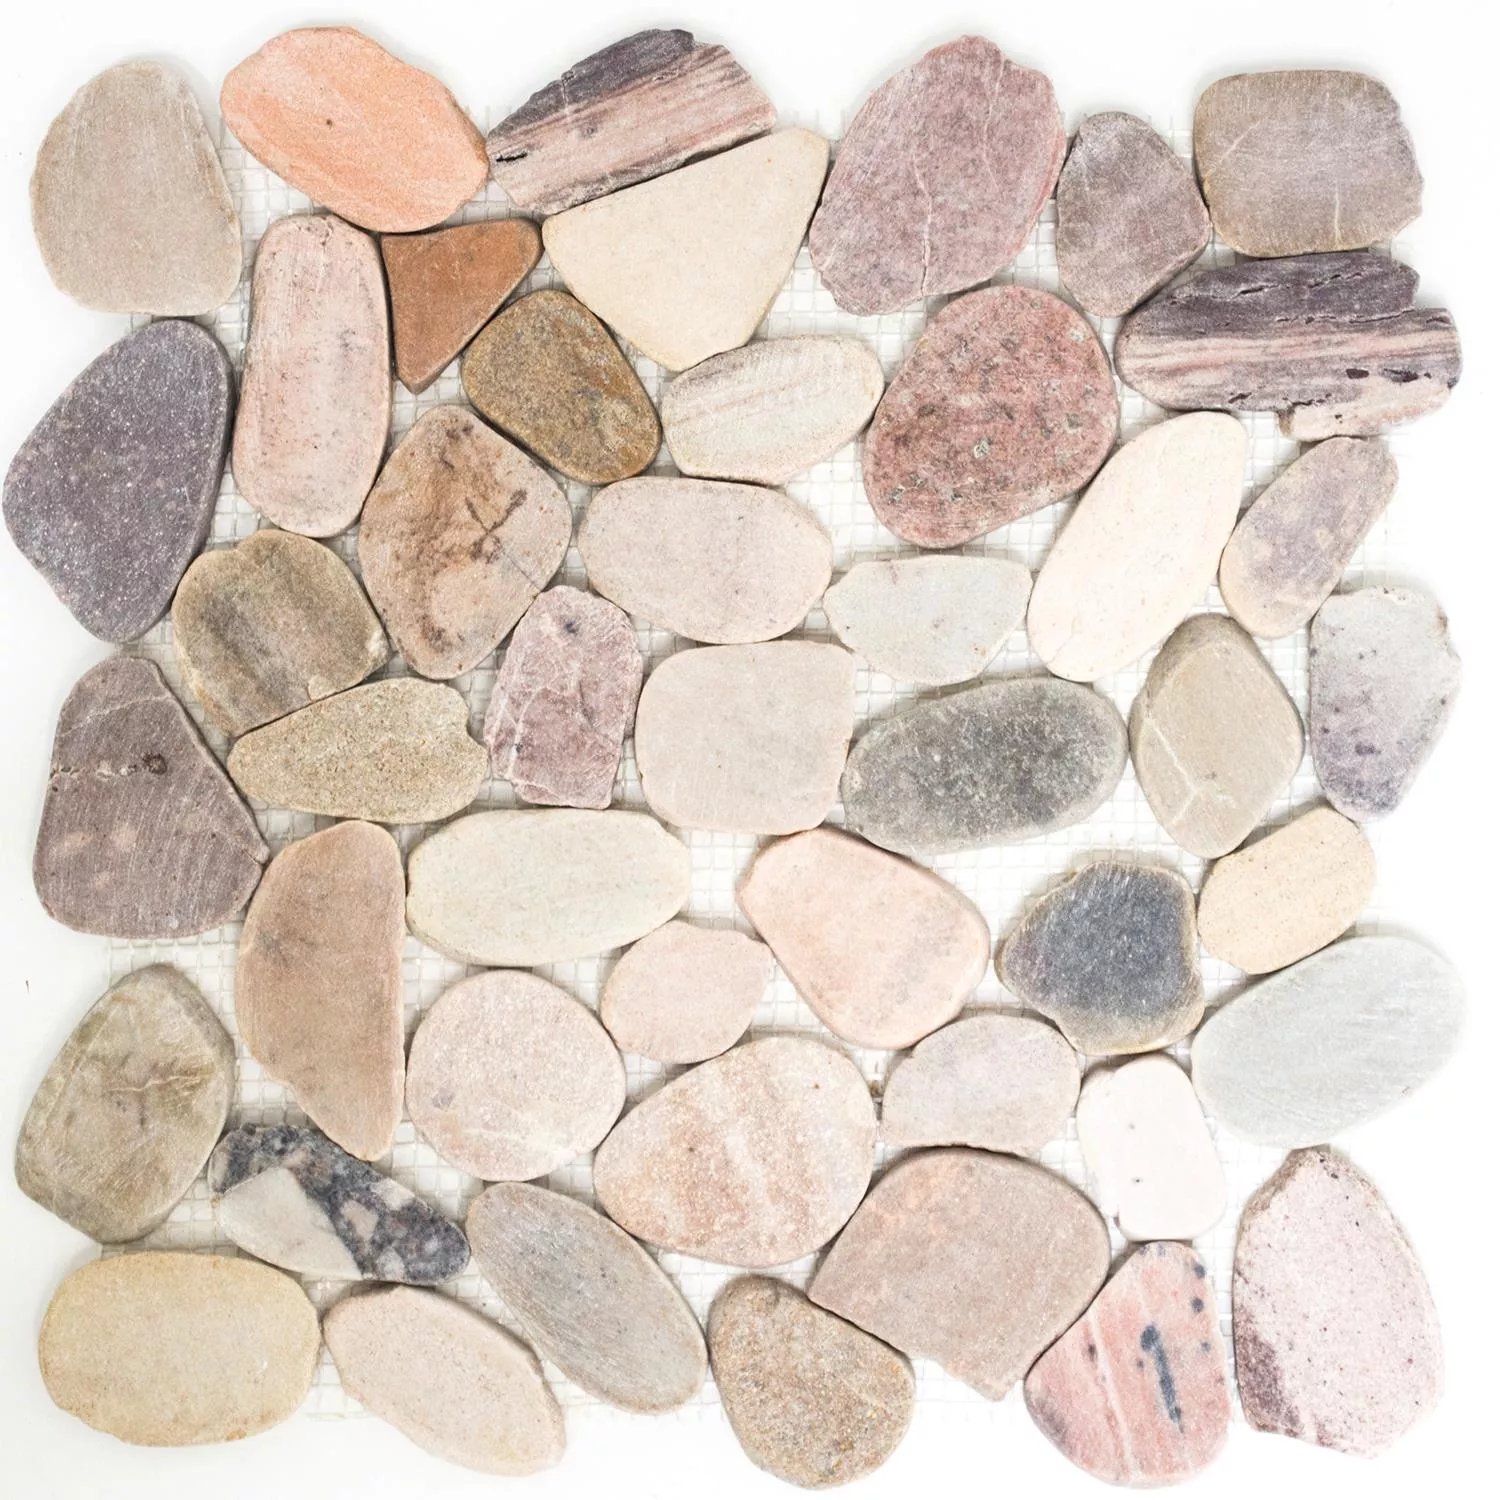 Sample River Pebbles Mosaic Natural Stone Cut Kos